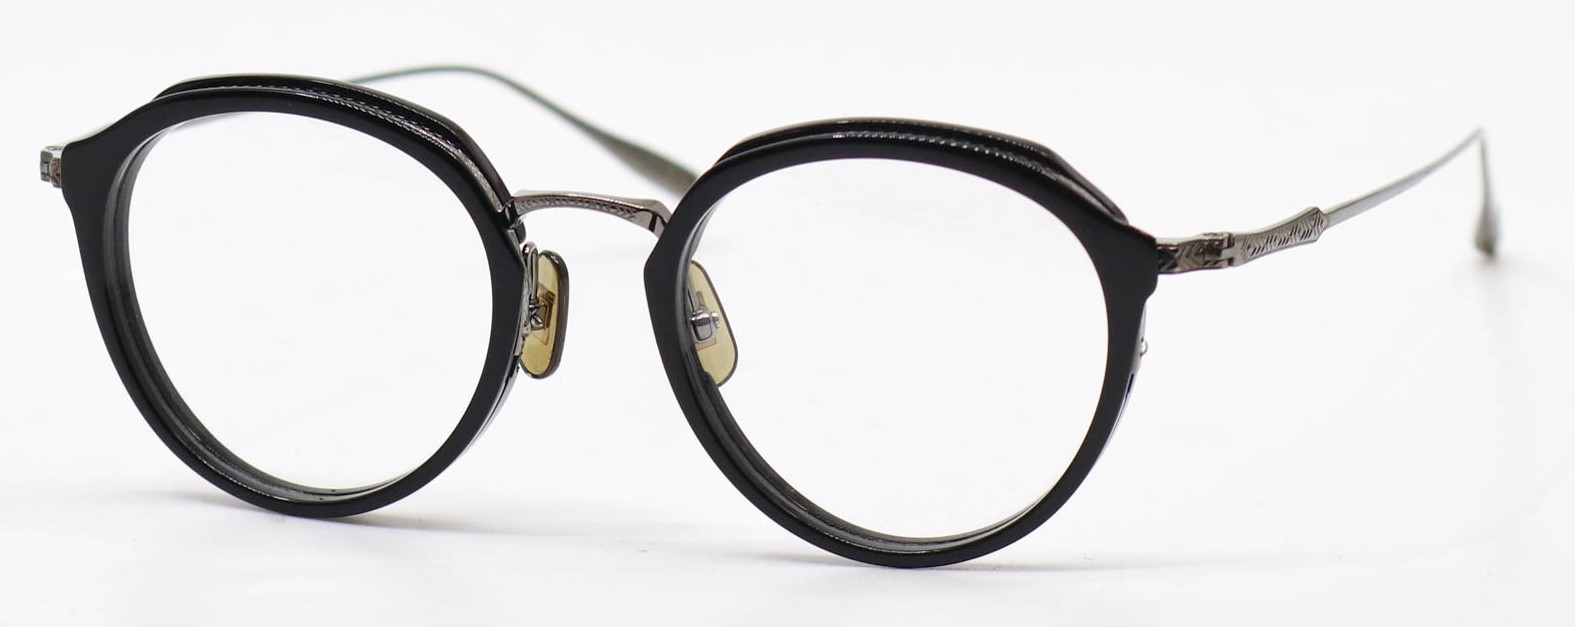 眼鏡のカラータイプC-1 Black/Gray